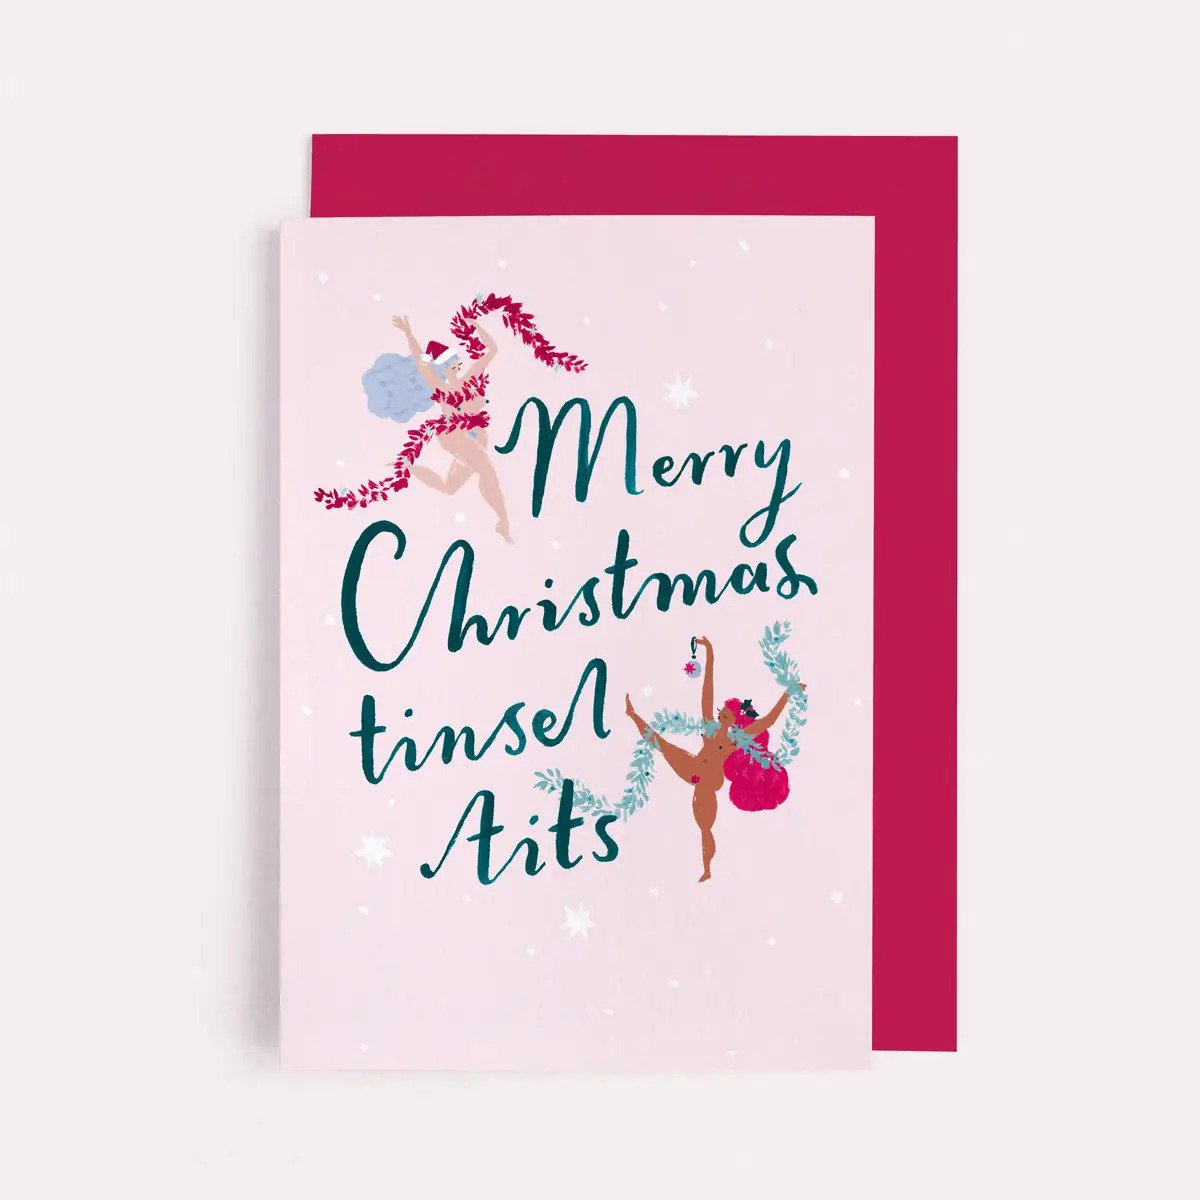 Tinsel Tits Christmas Card